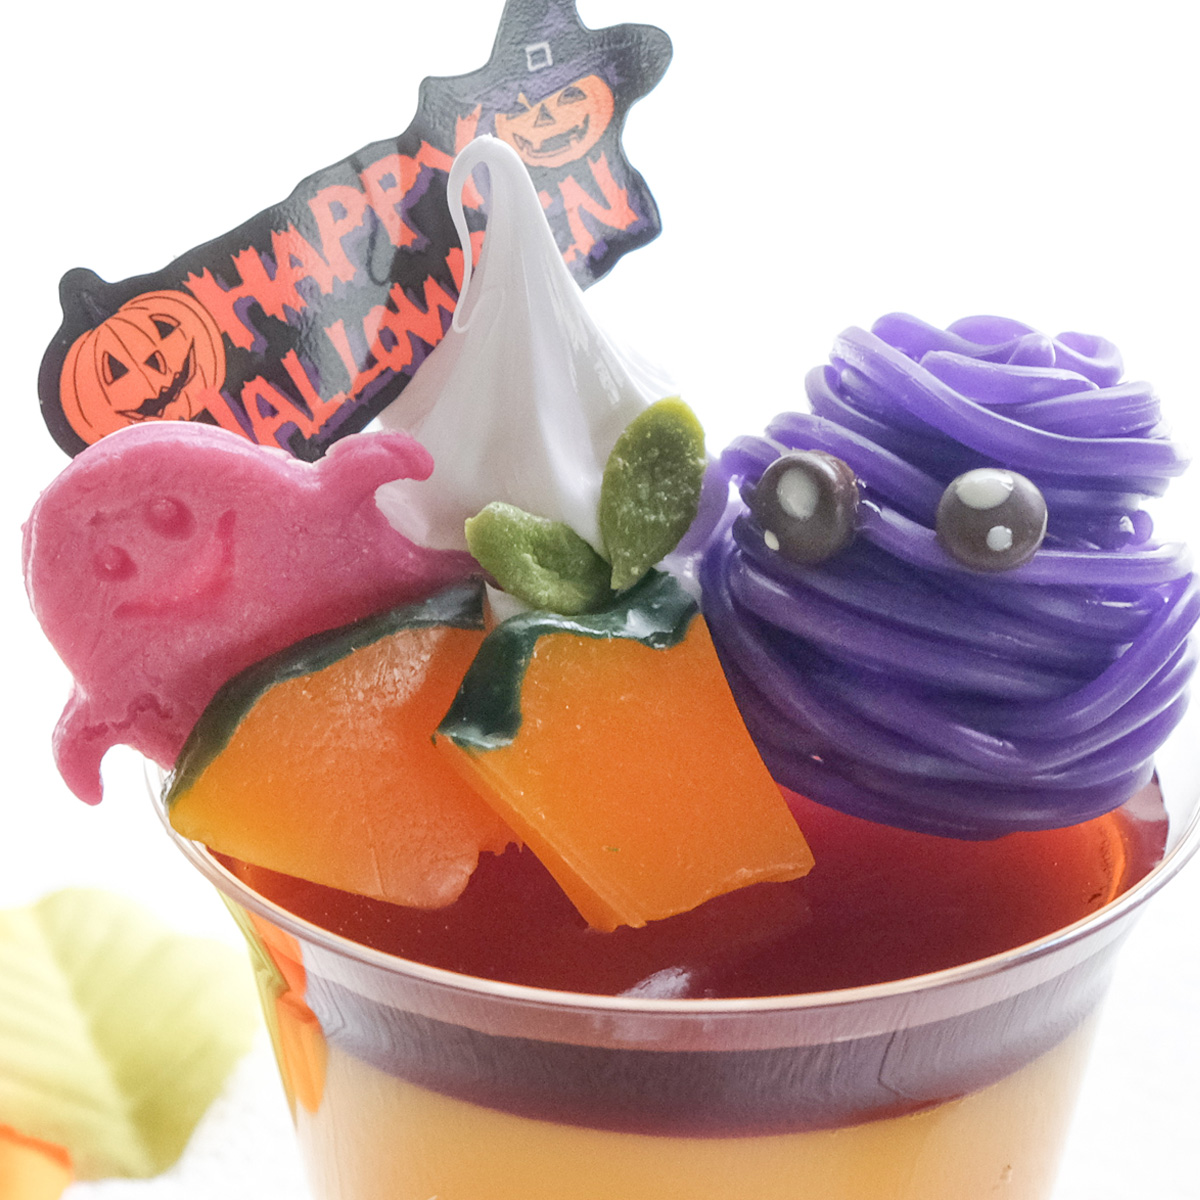 東京ソラマチ食品サンプル製作体験「ハロウィンかぼちゃプリン」